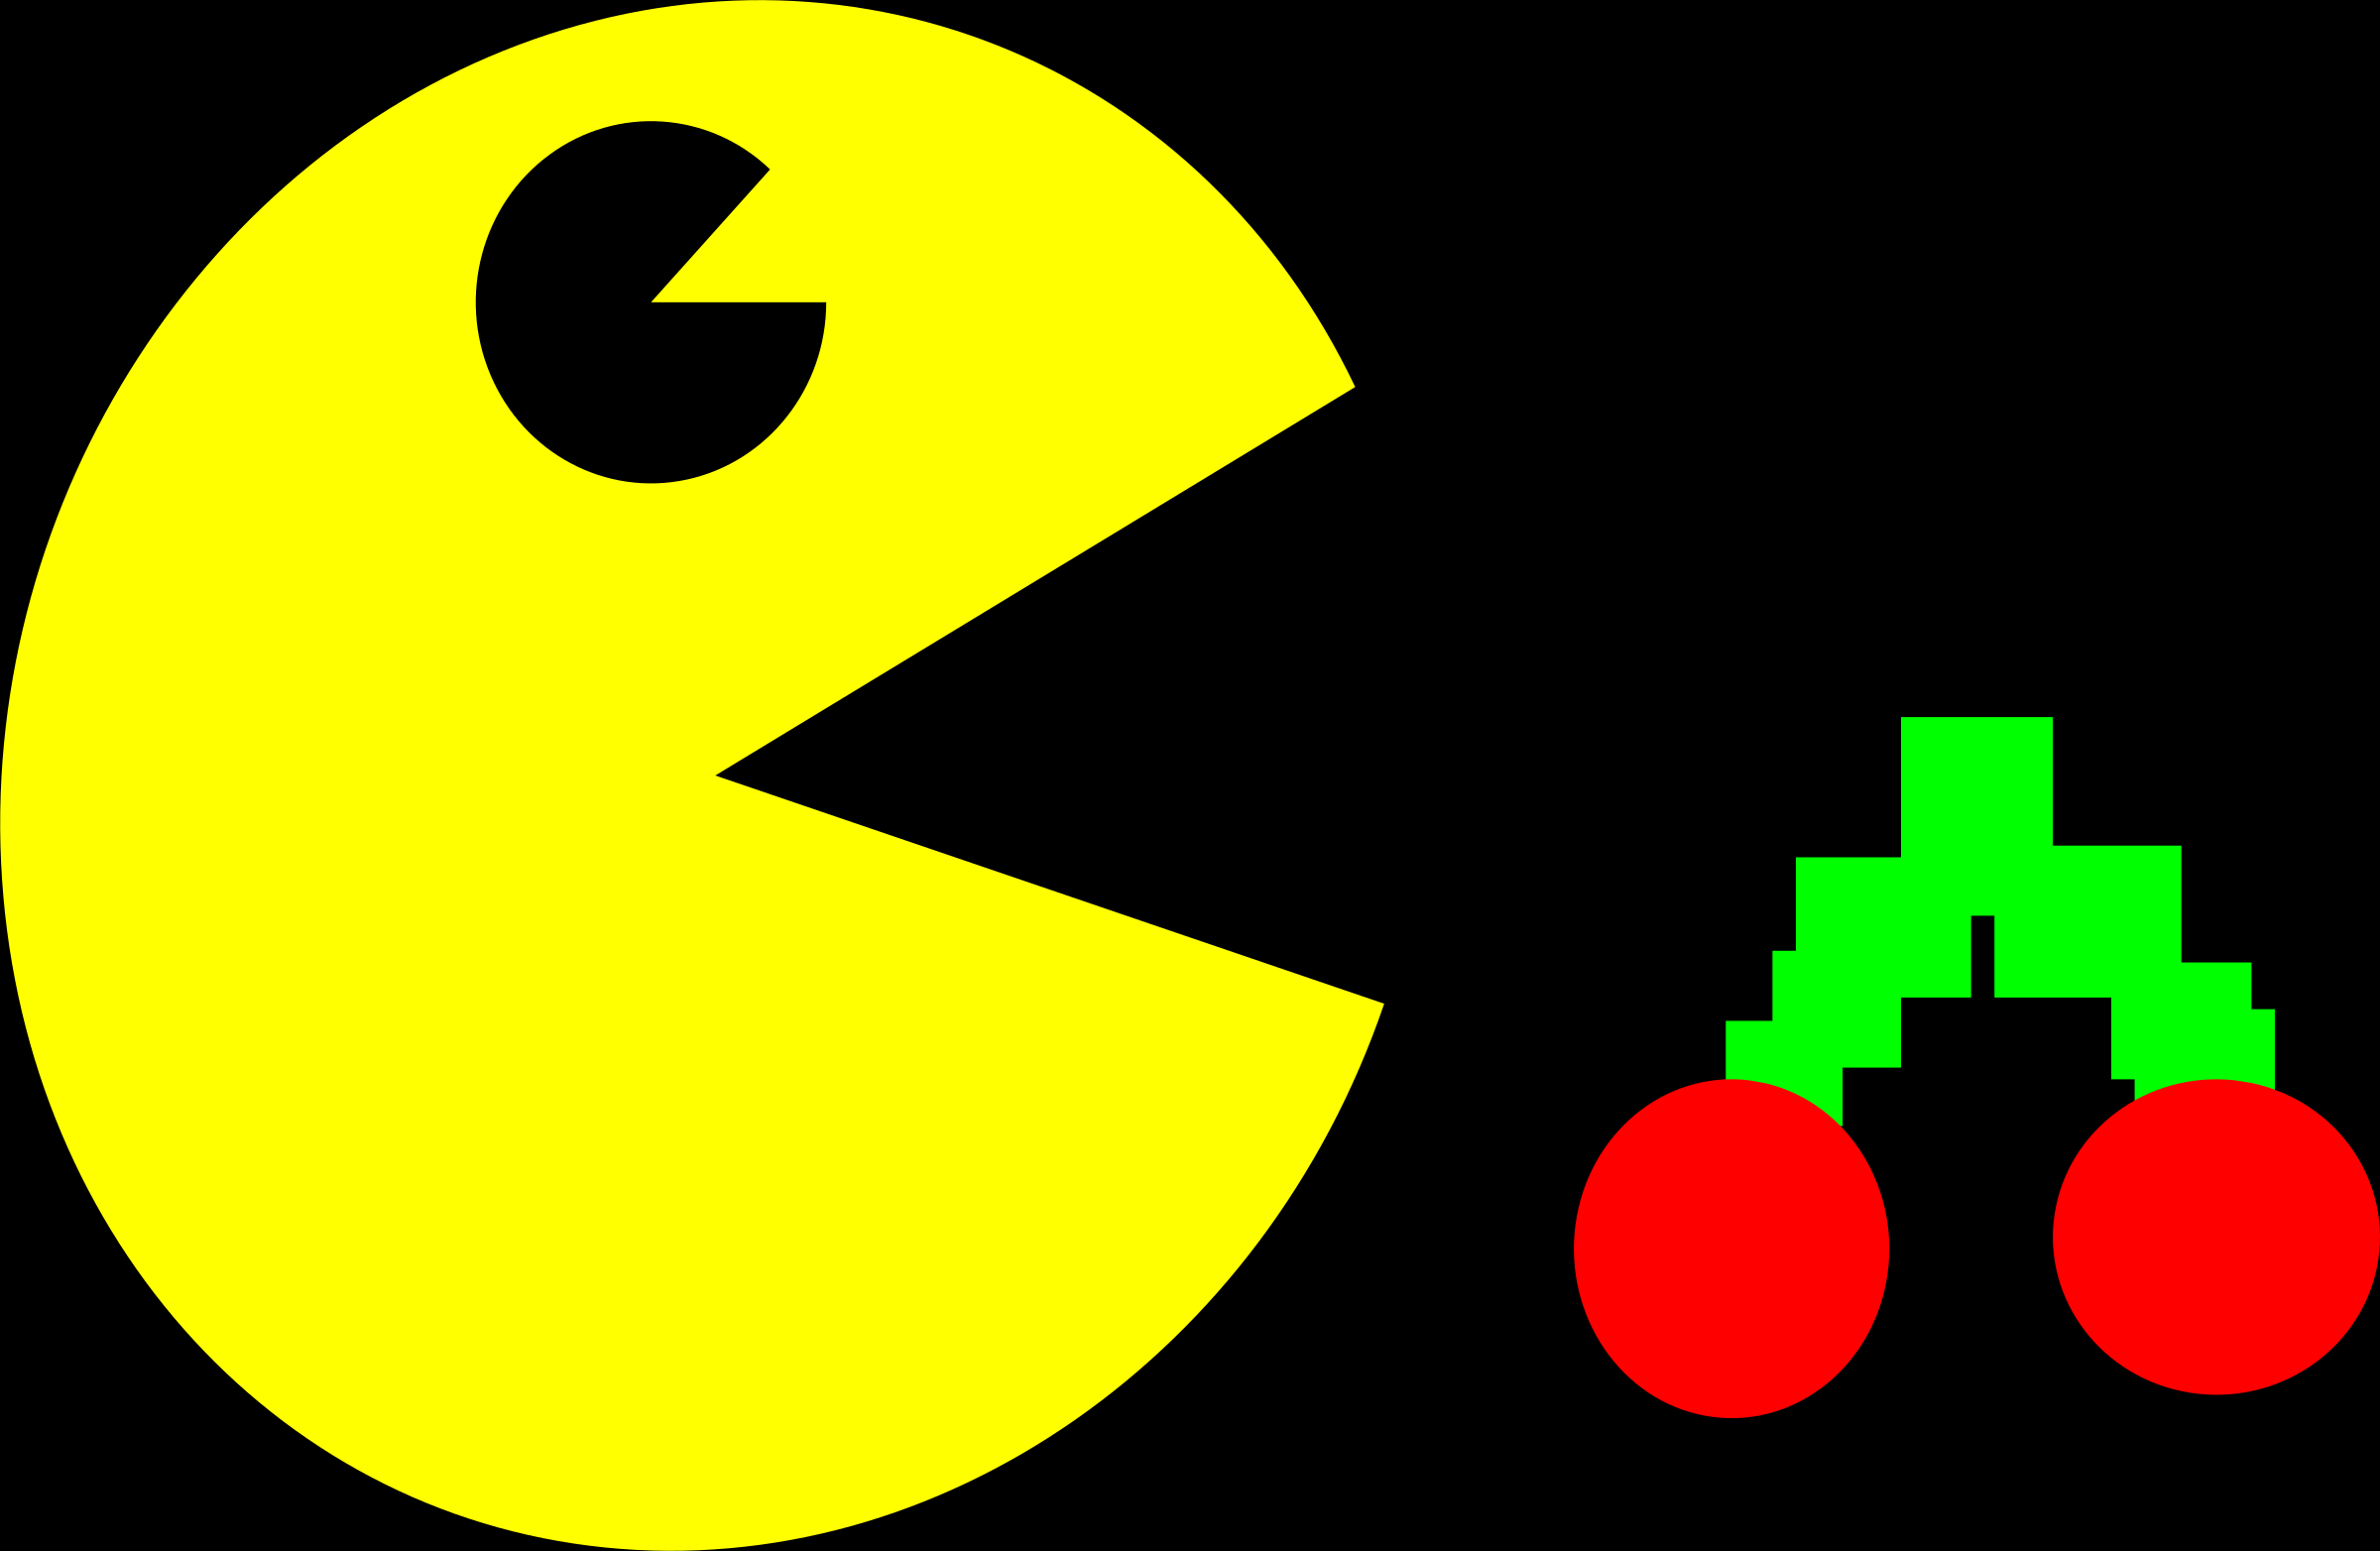 Pacman game. Пэкмен игра. Pacman герои. Персонажи в игре Пэкмэн. Gfr5vfy.